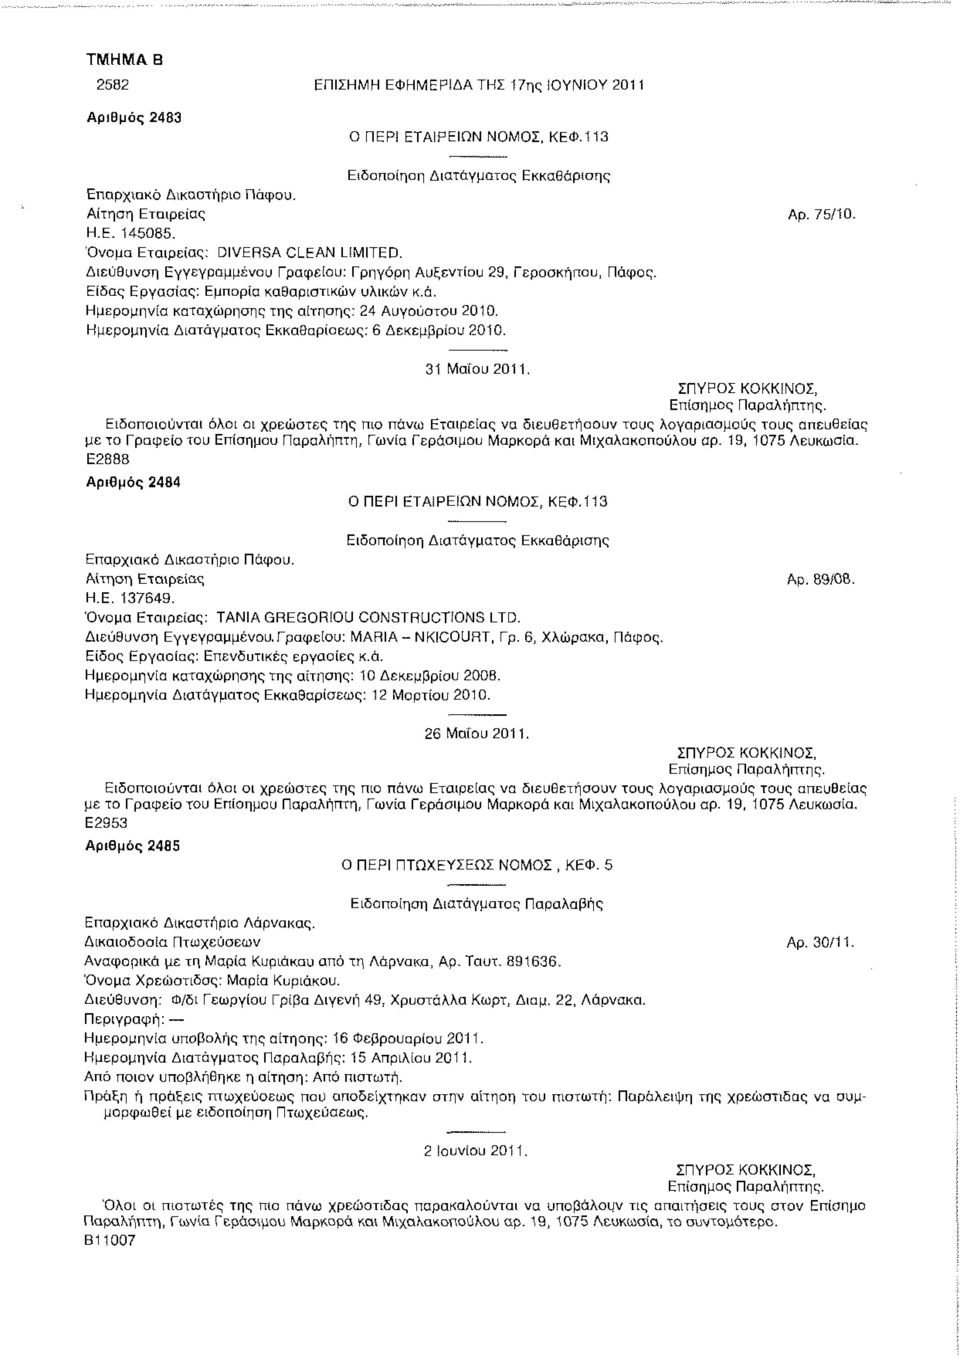 Ημερομηνία Διατάγματος Εκκαθαρίσεως: 6 Δεκεμβρίου 2010. 31 Μαίου 2011, με το Γραφείο του Επίσημου Παραλήπτη, Γωνία Γεράσιμου Μαρκορά και Μιχαλακοπουλου αρ. 19, 1075 Λευκωσία.